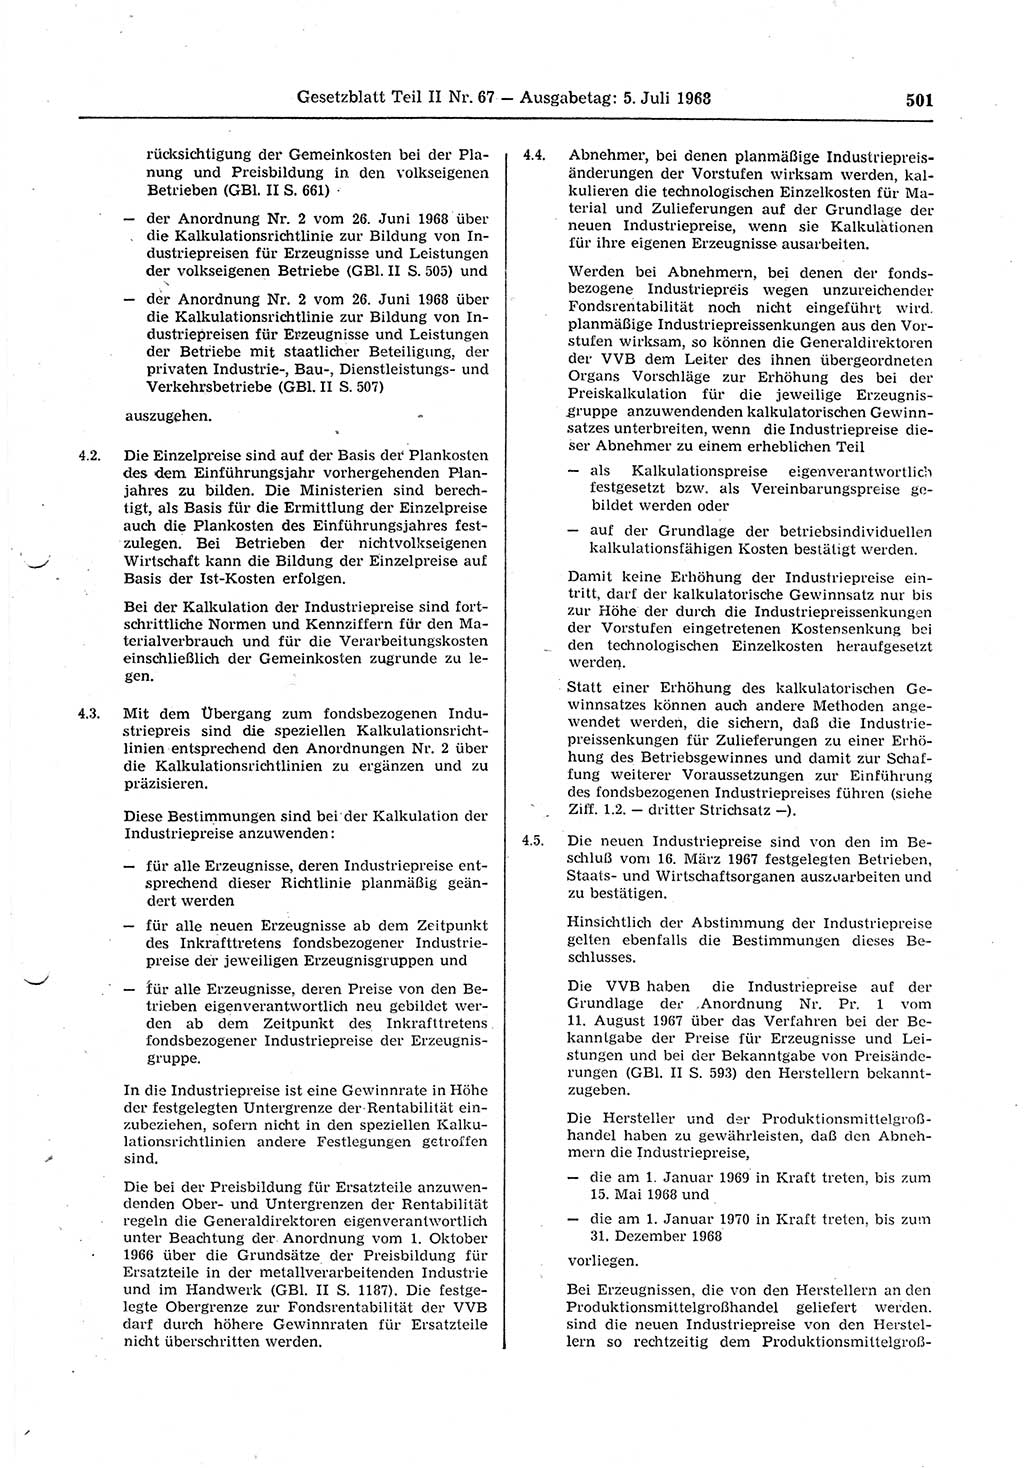 Gesetzblatt (GBl.) der Deutschen Demokratischen Republik (DDR) Teil ⅠⅠ 1968, Seite 501 (GBl. DDR ⅠⅠ 1968, S. 501)